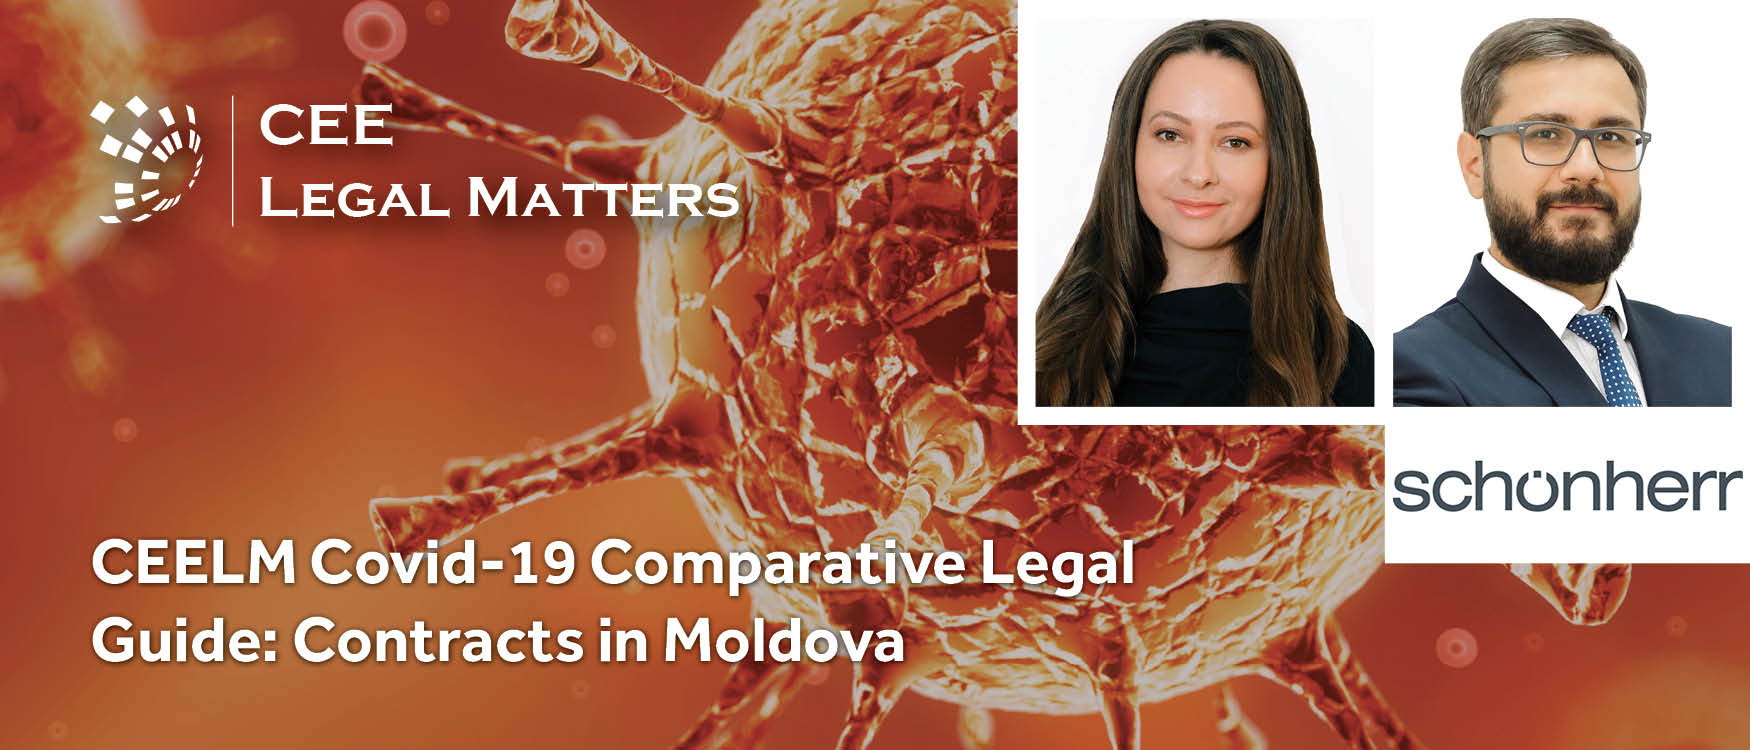 CEELM Covid-19 Comparative Legal Guide: Contracts in Moldova